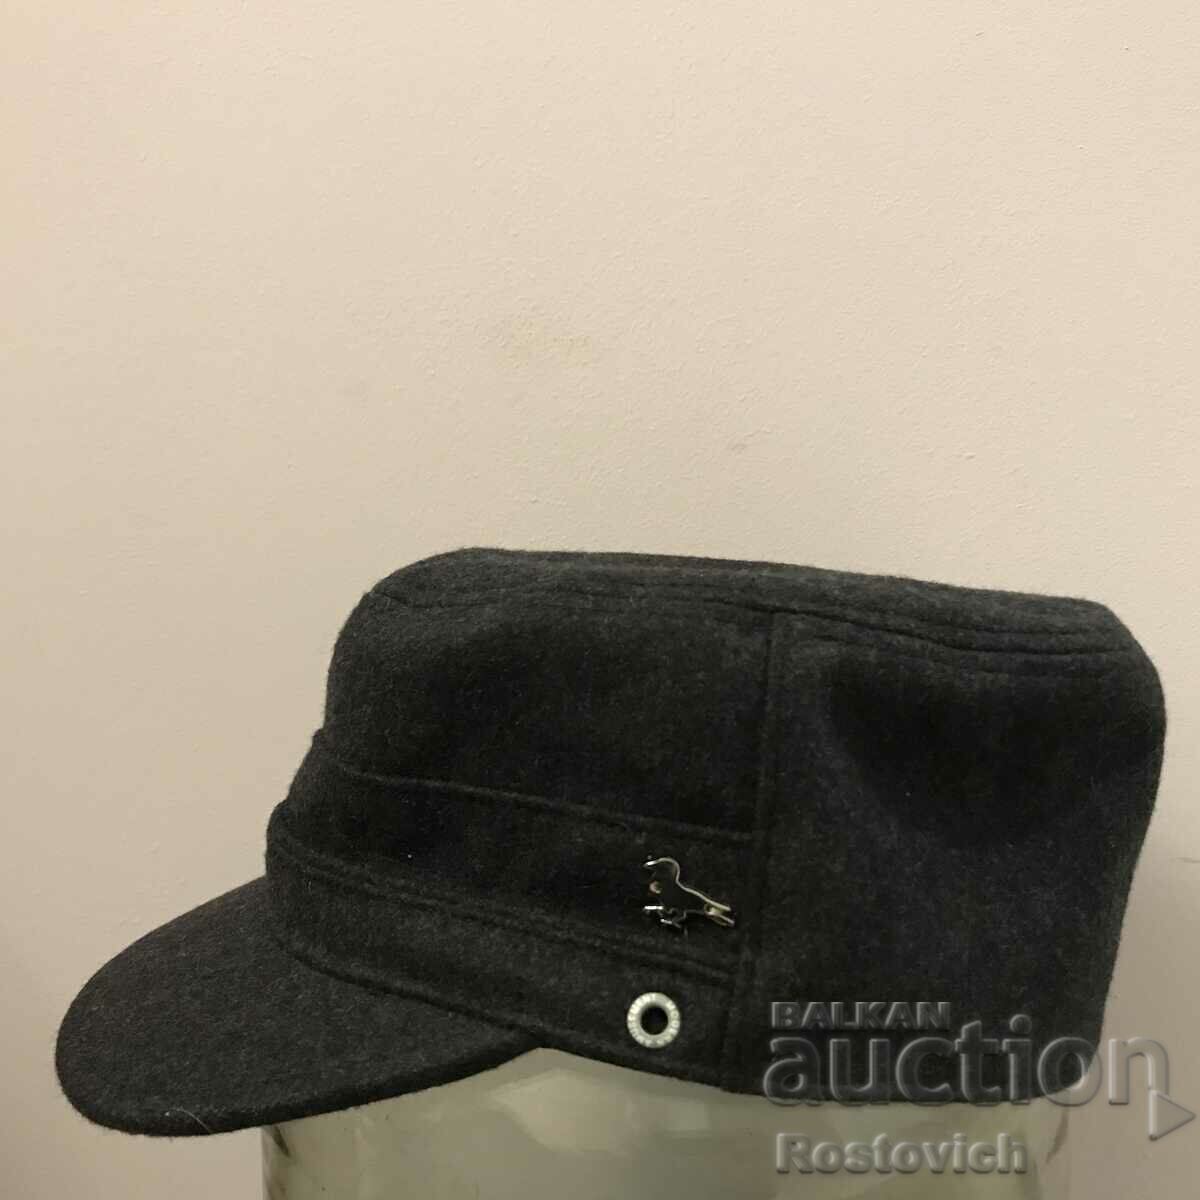 Μοντέρνο καπέλο ψυχαγωγίας (μαύρο κοράκι)